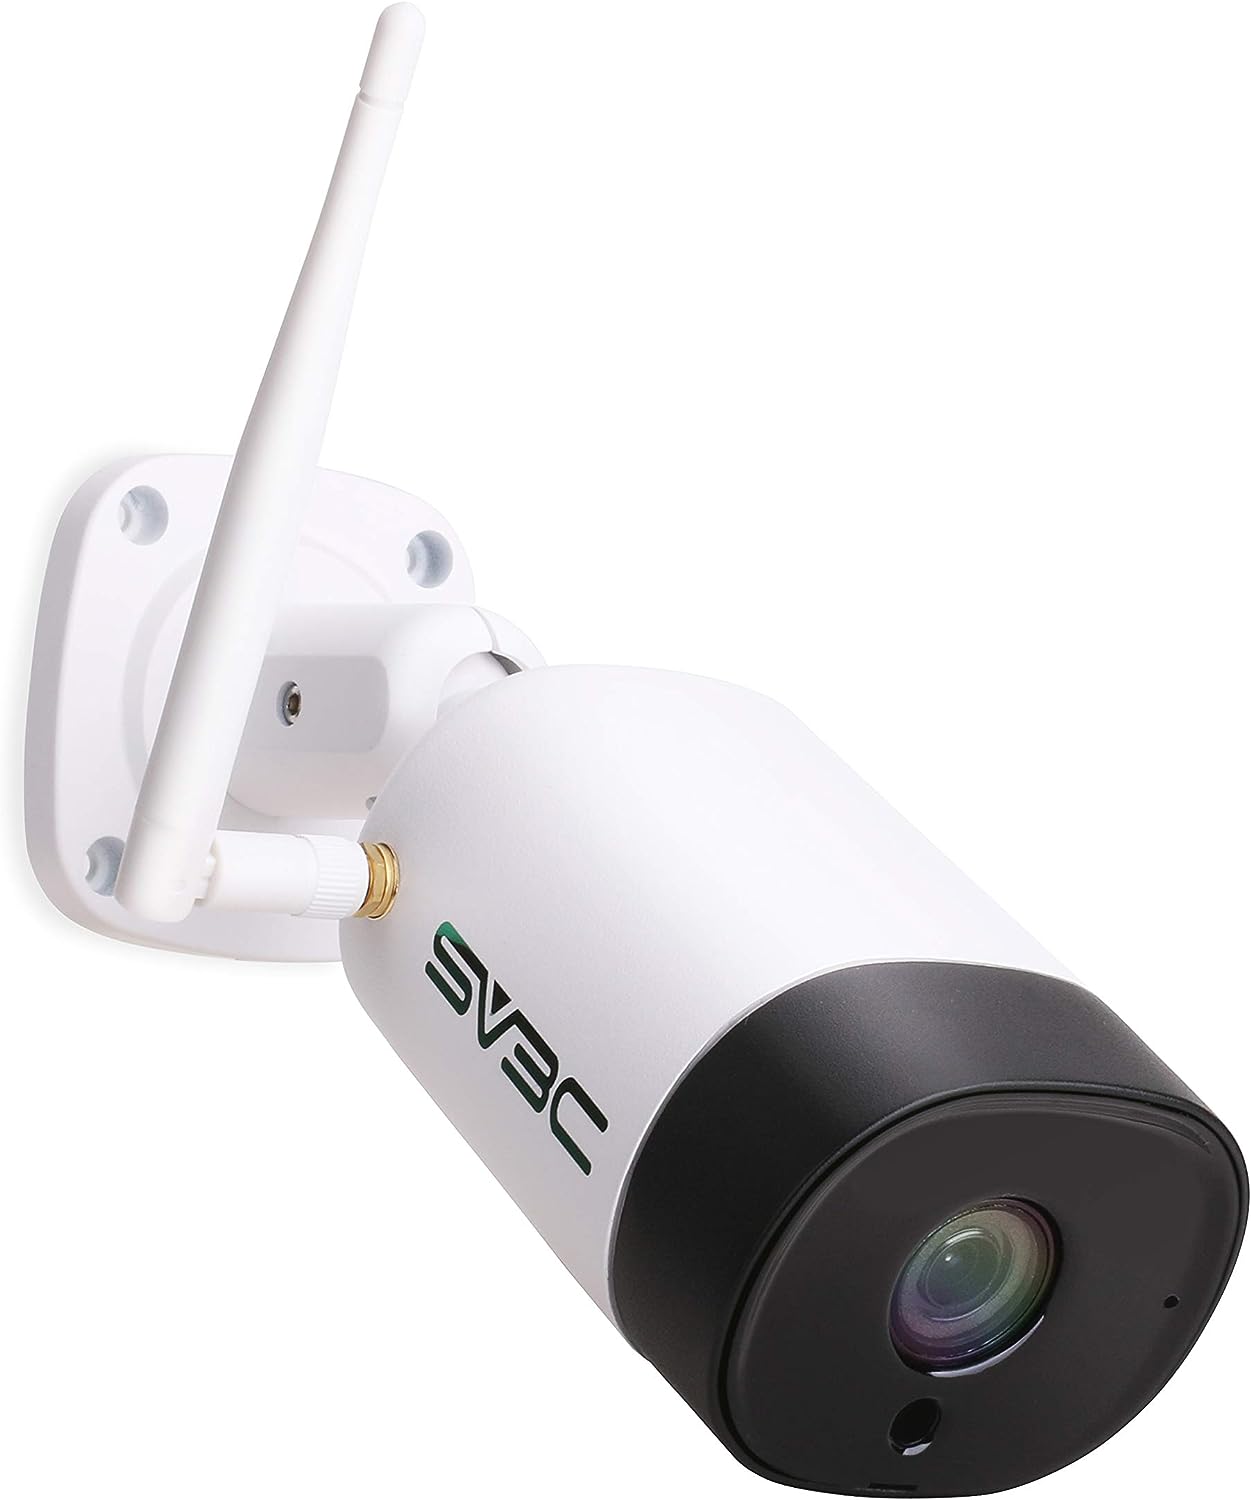 防犯カメラ 屋外 ワイヤレス 2.4g/5g対応 監視カメラ wifi 500万画素 人体検知 AI検知 ネットワークカメラ ipカメラ ヒューマン検知 双方向音声 暗視撮影 防水 録画 SV3C